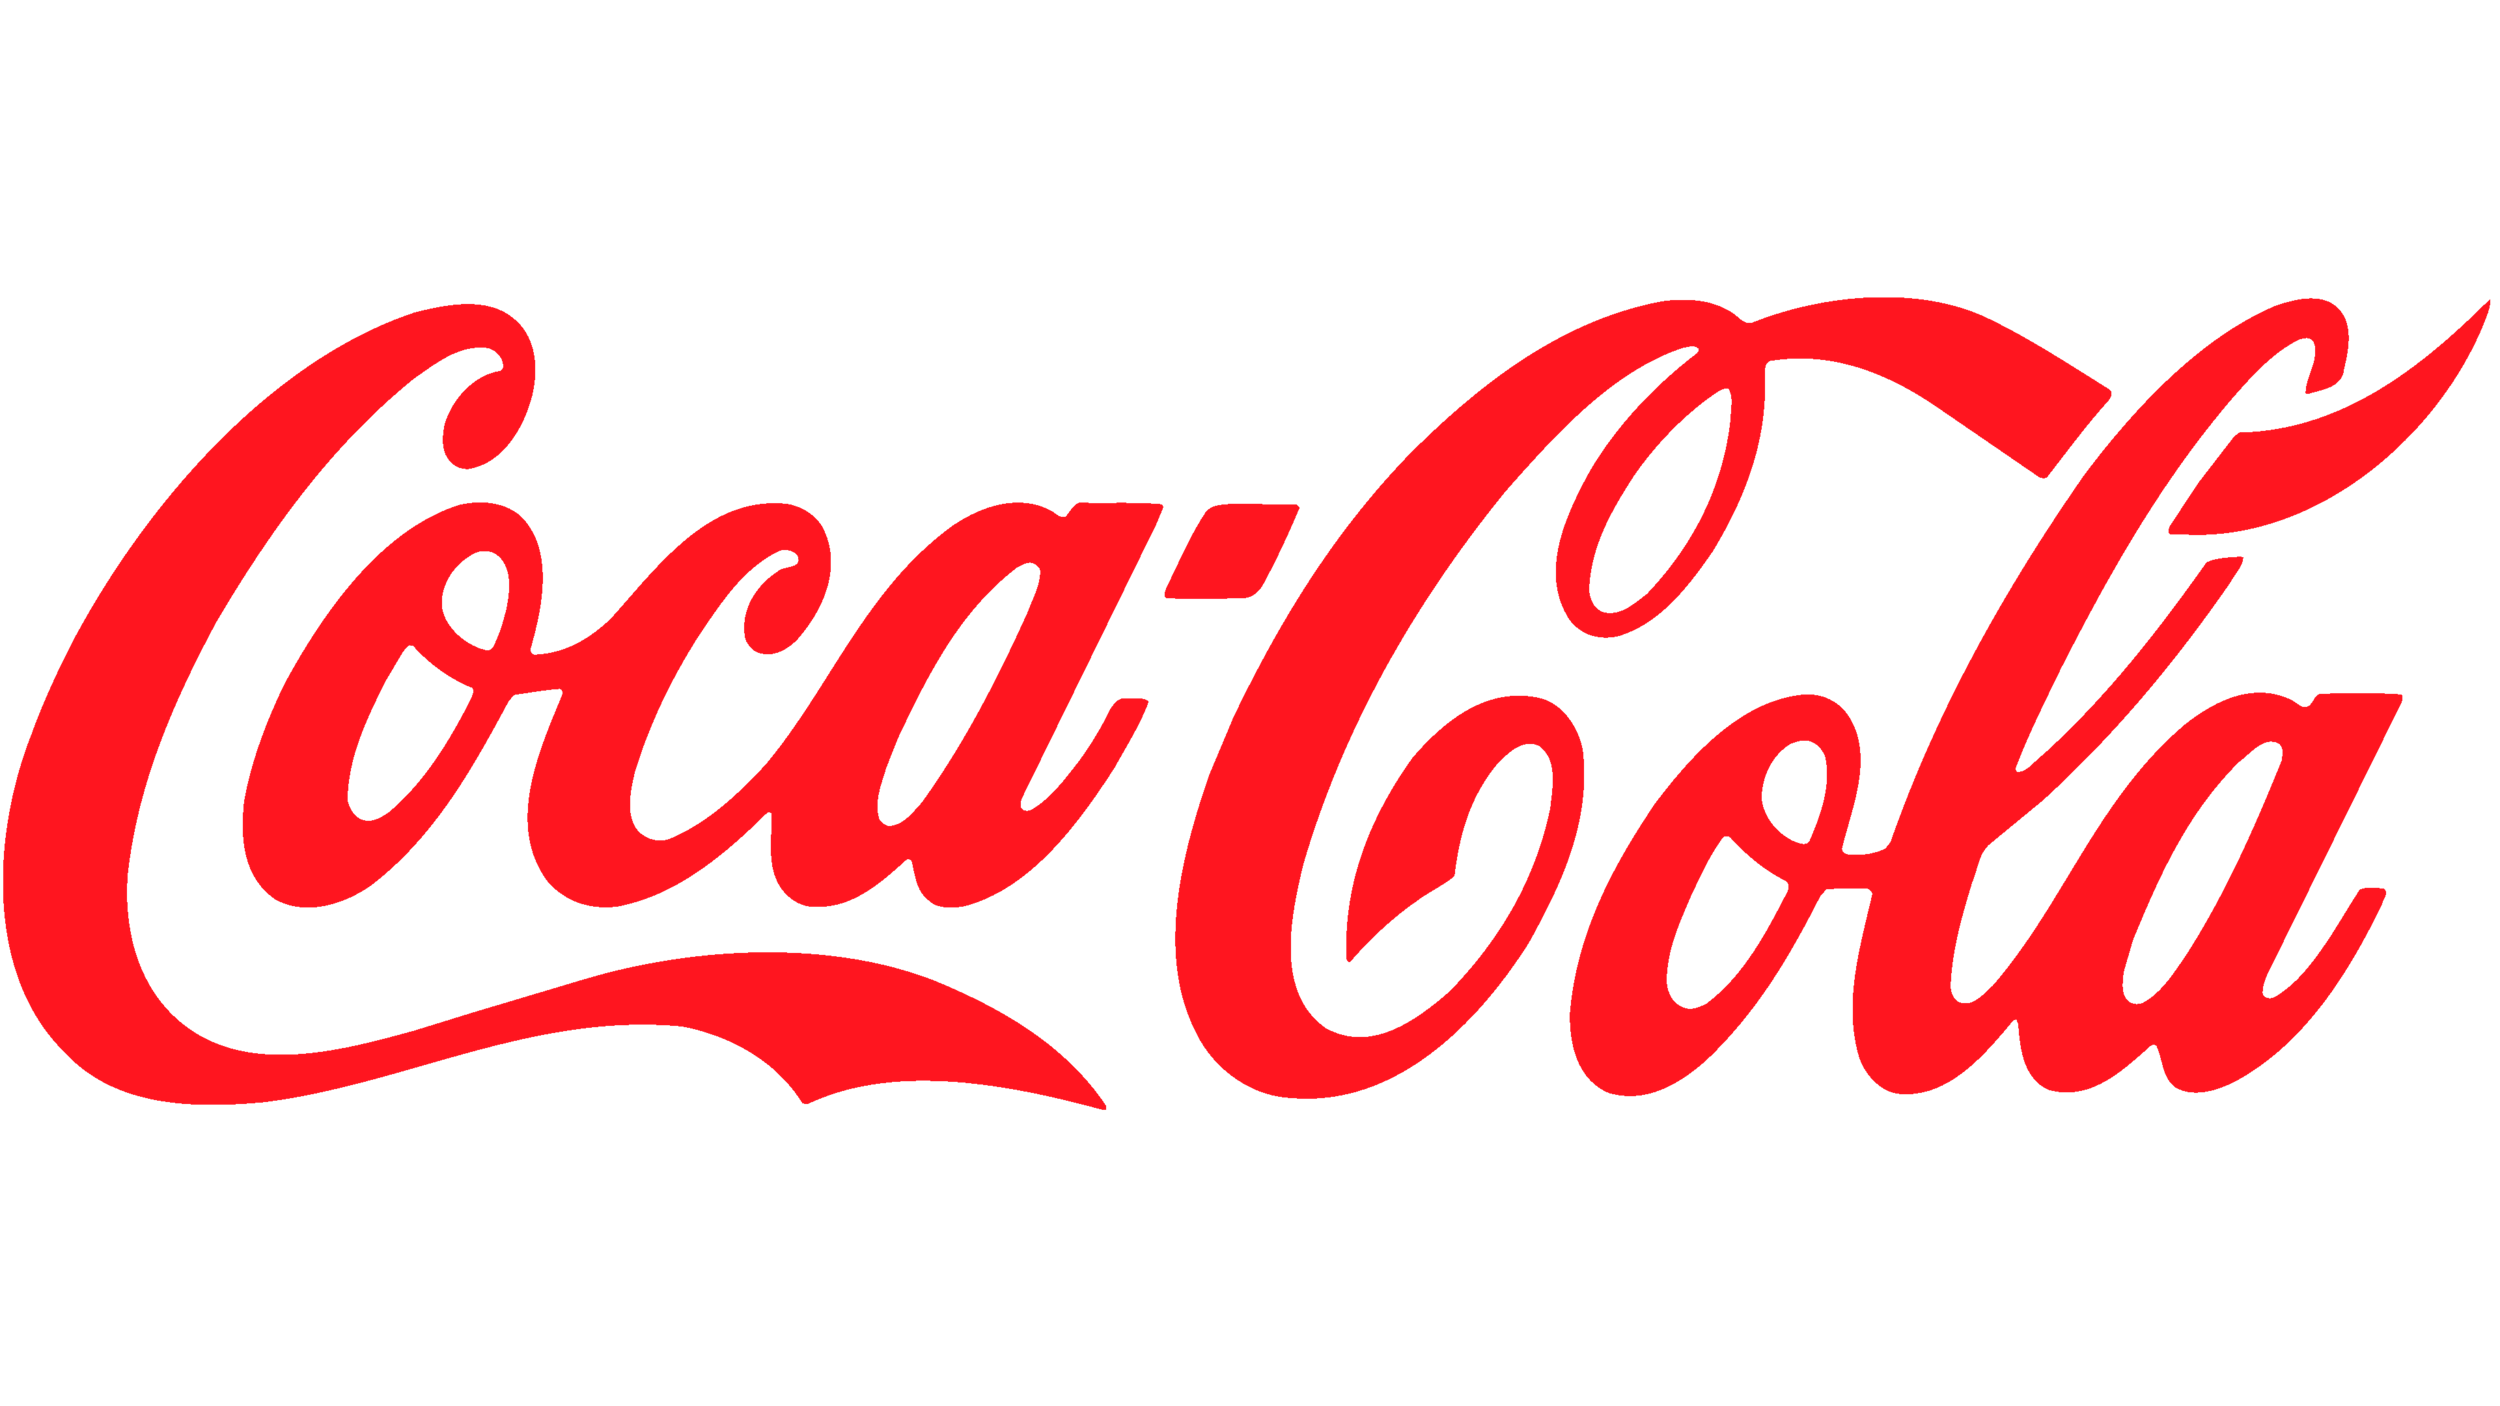 Coca Cola.png